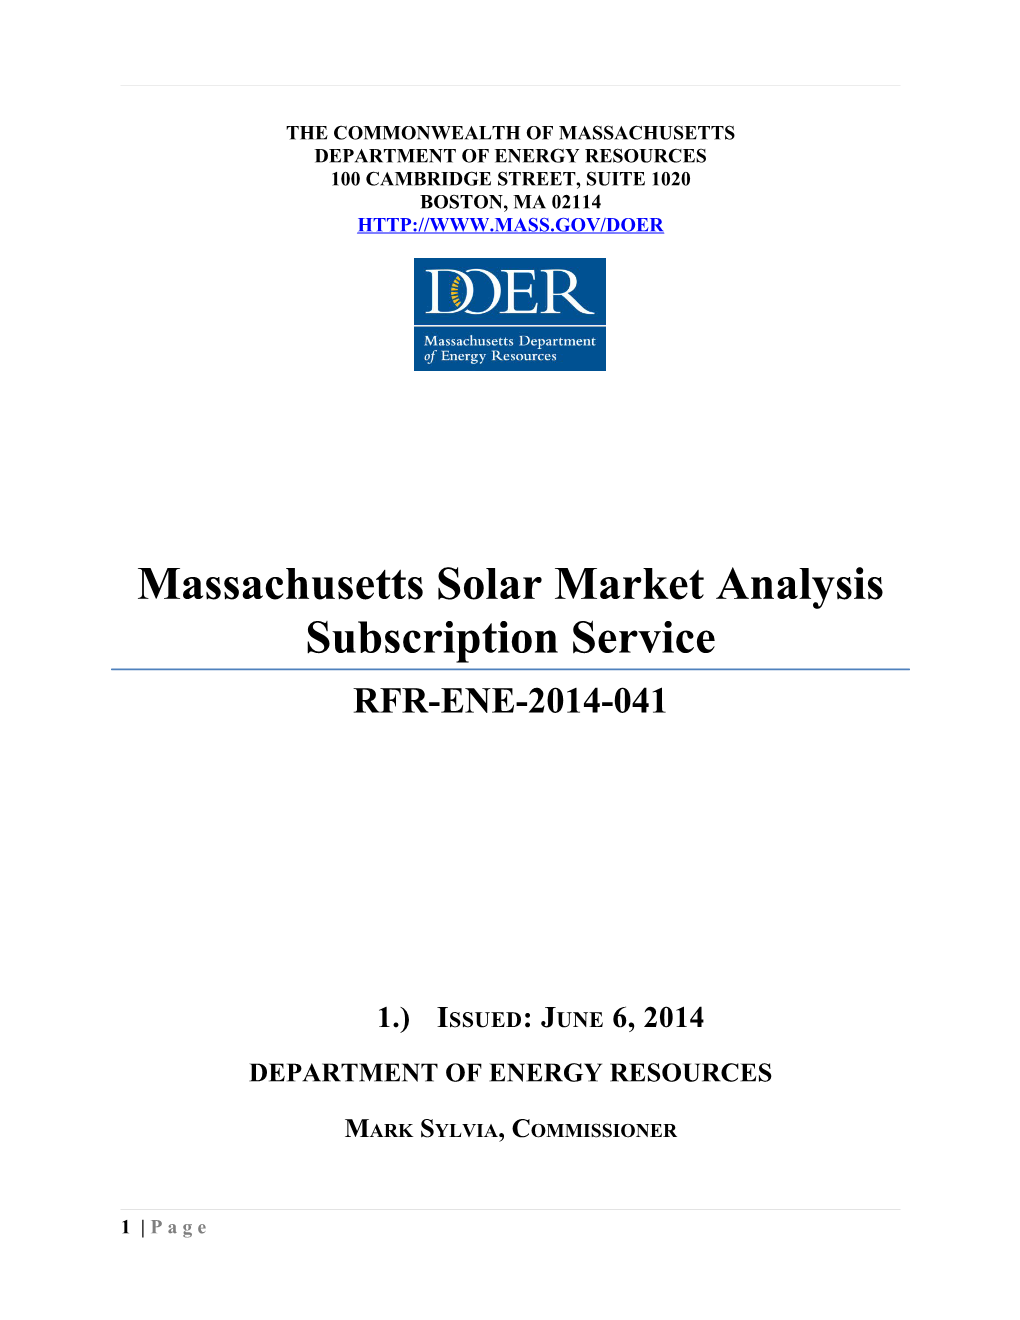 Massachusetts Solar Market Analysis Subscription Service